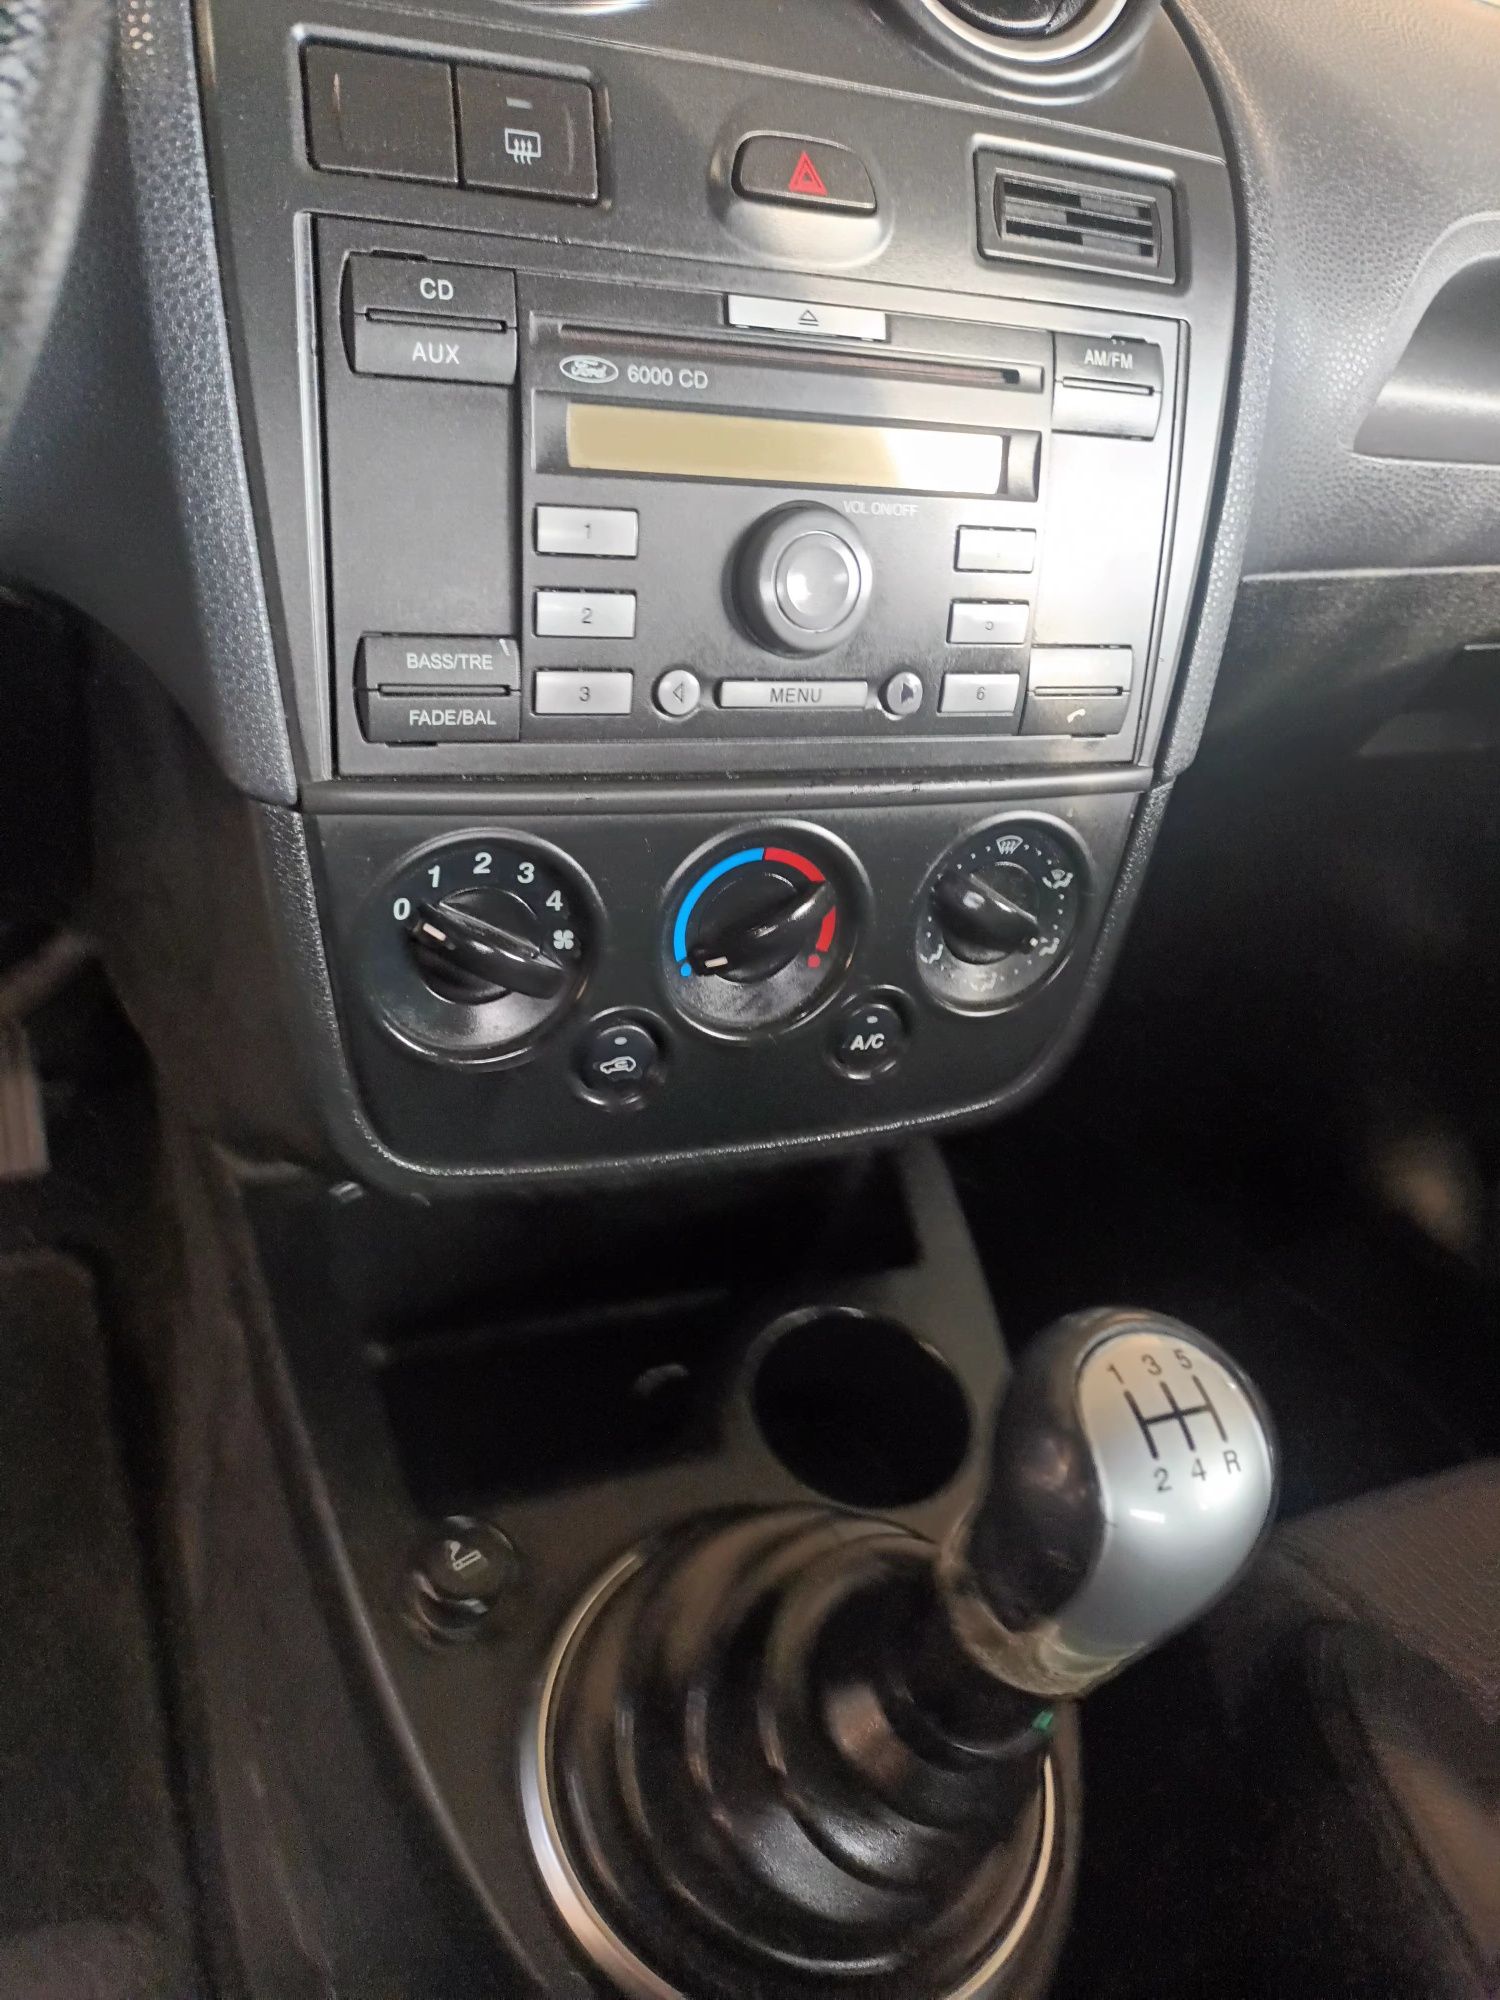 Ford Fiesta 2007 1.6 tdi 90cp